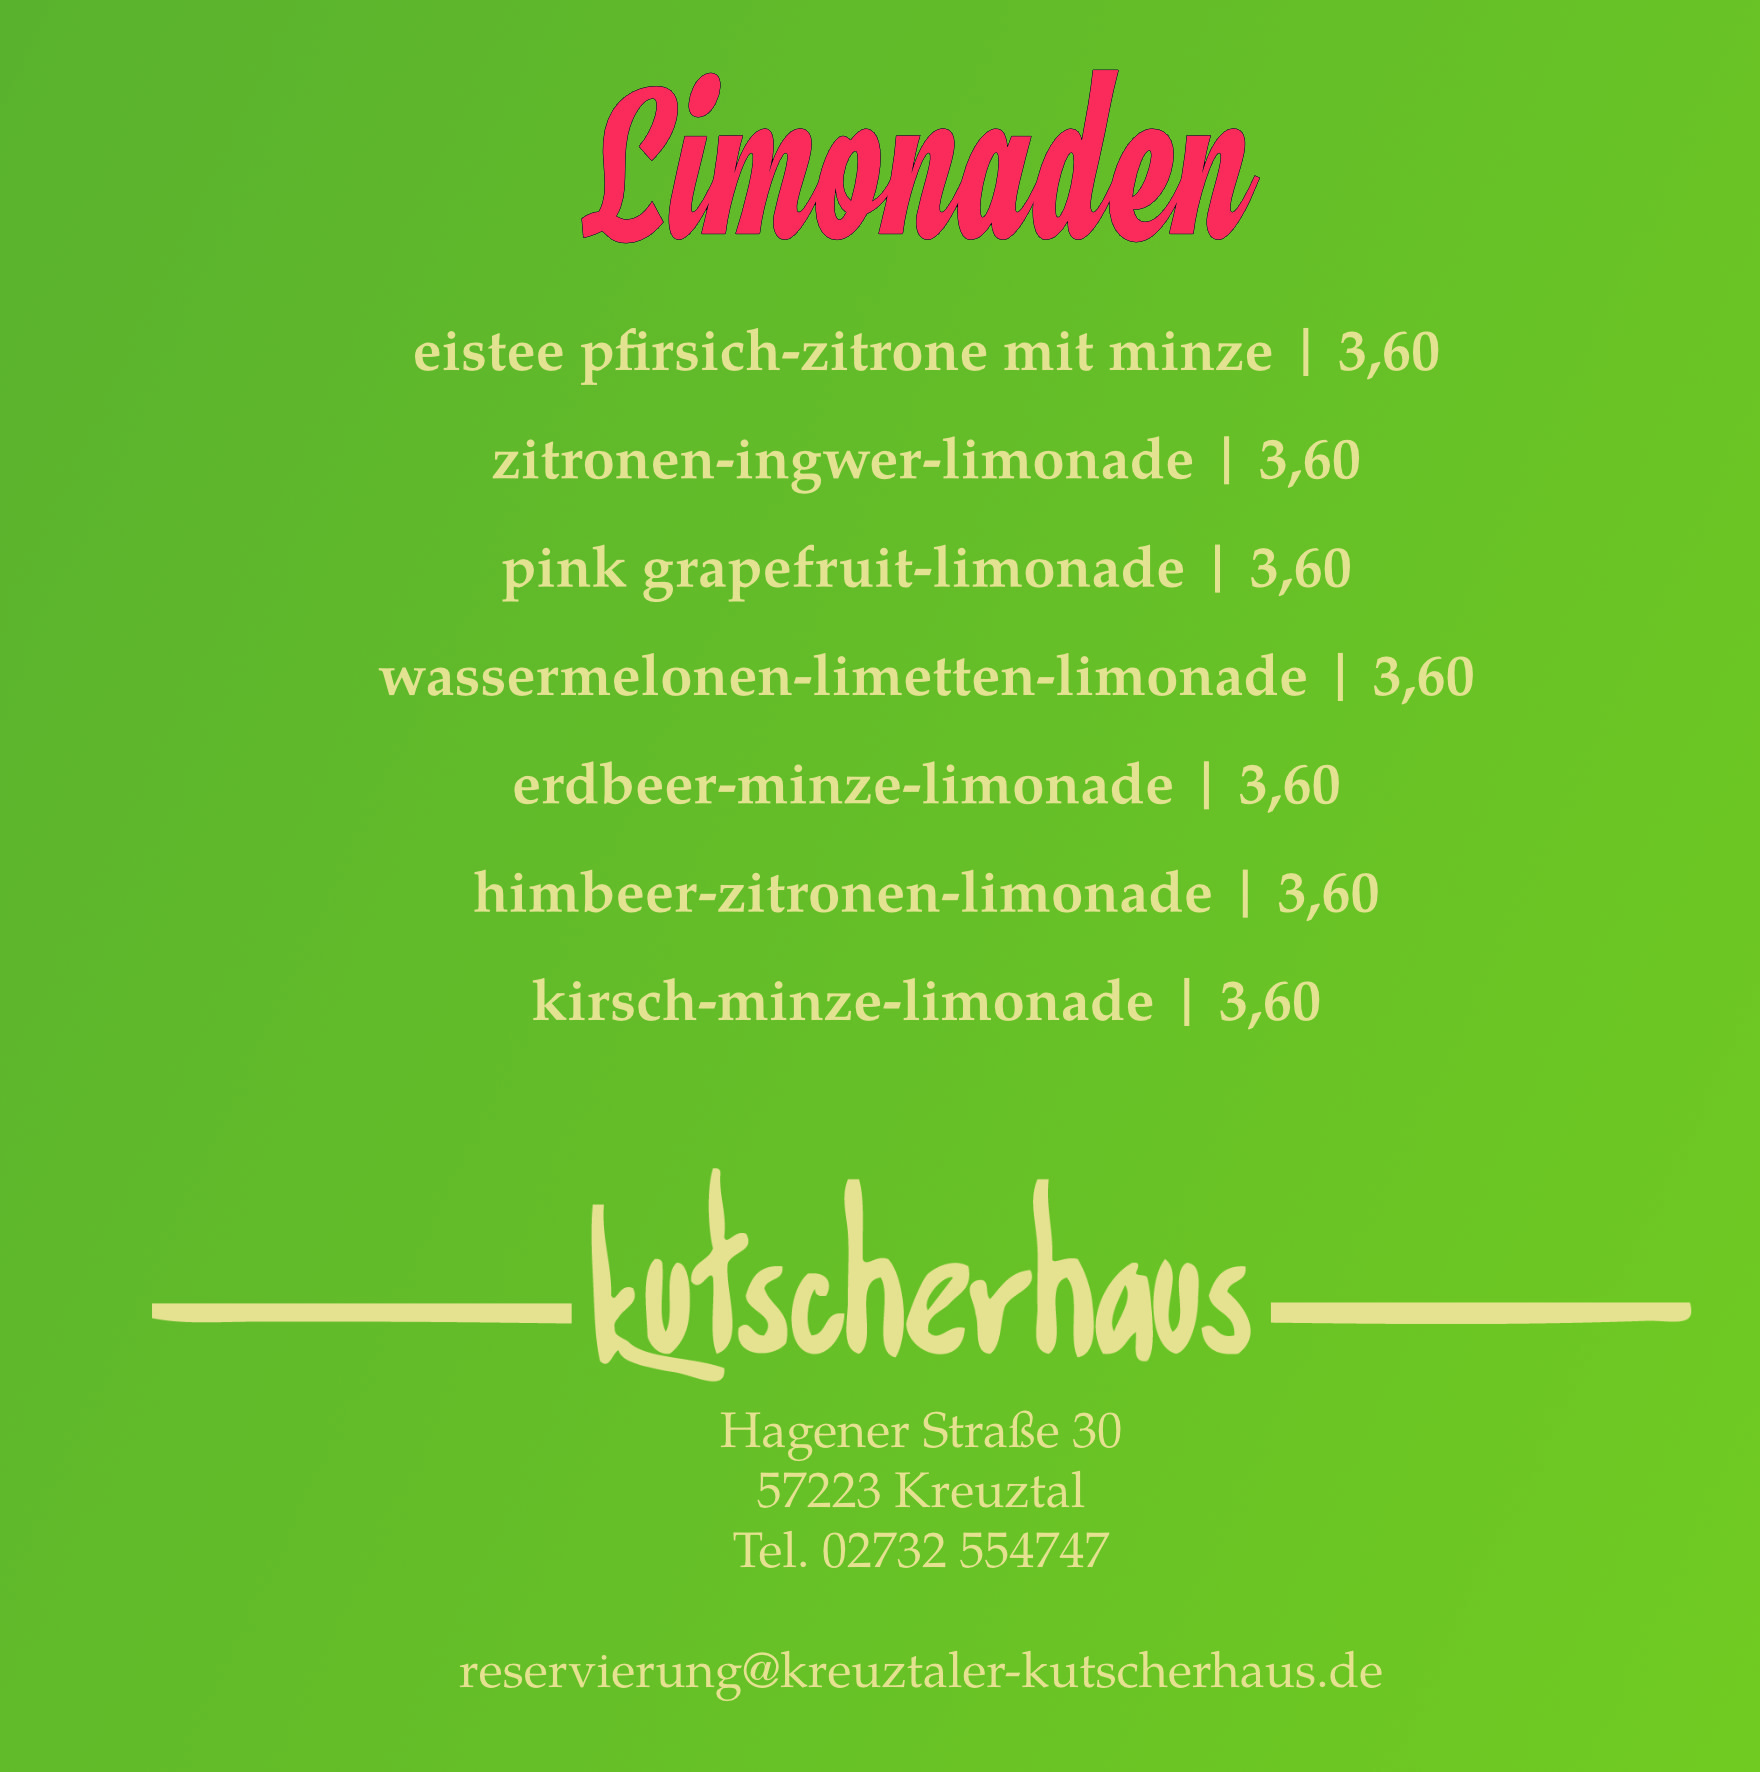 Kreuztaler Kutscherhaus - Cocktails 03